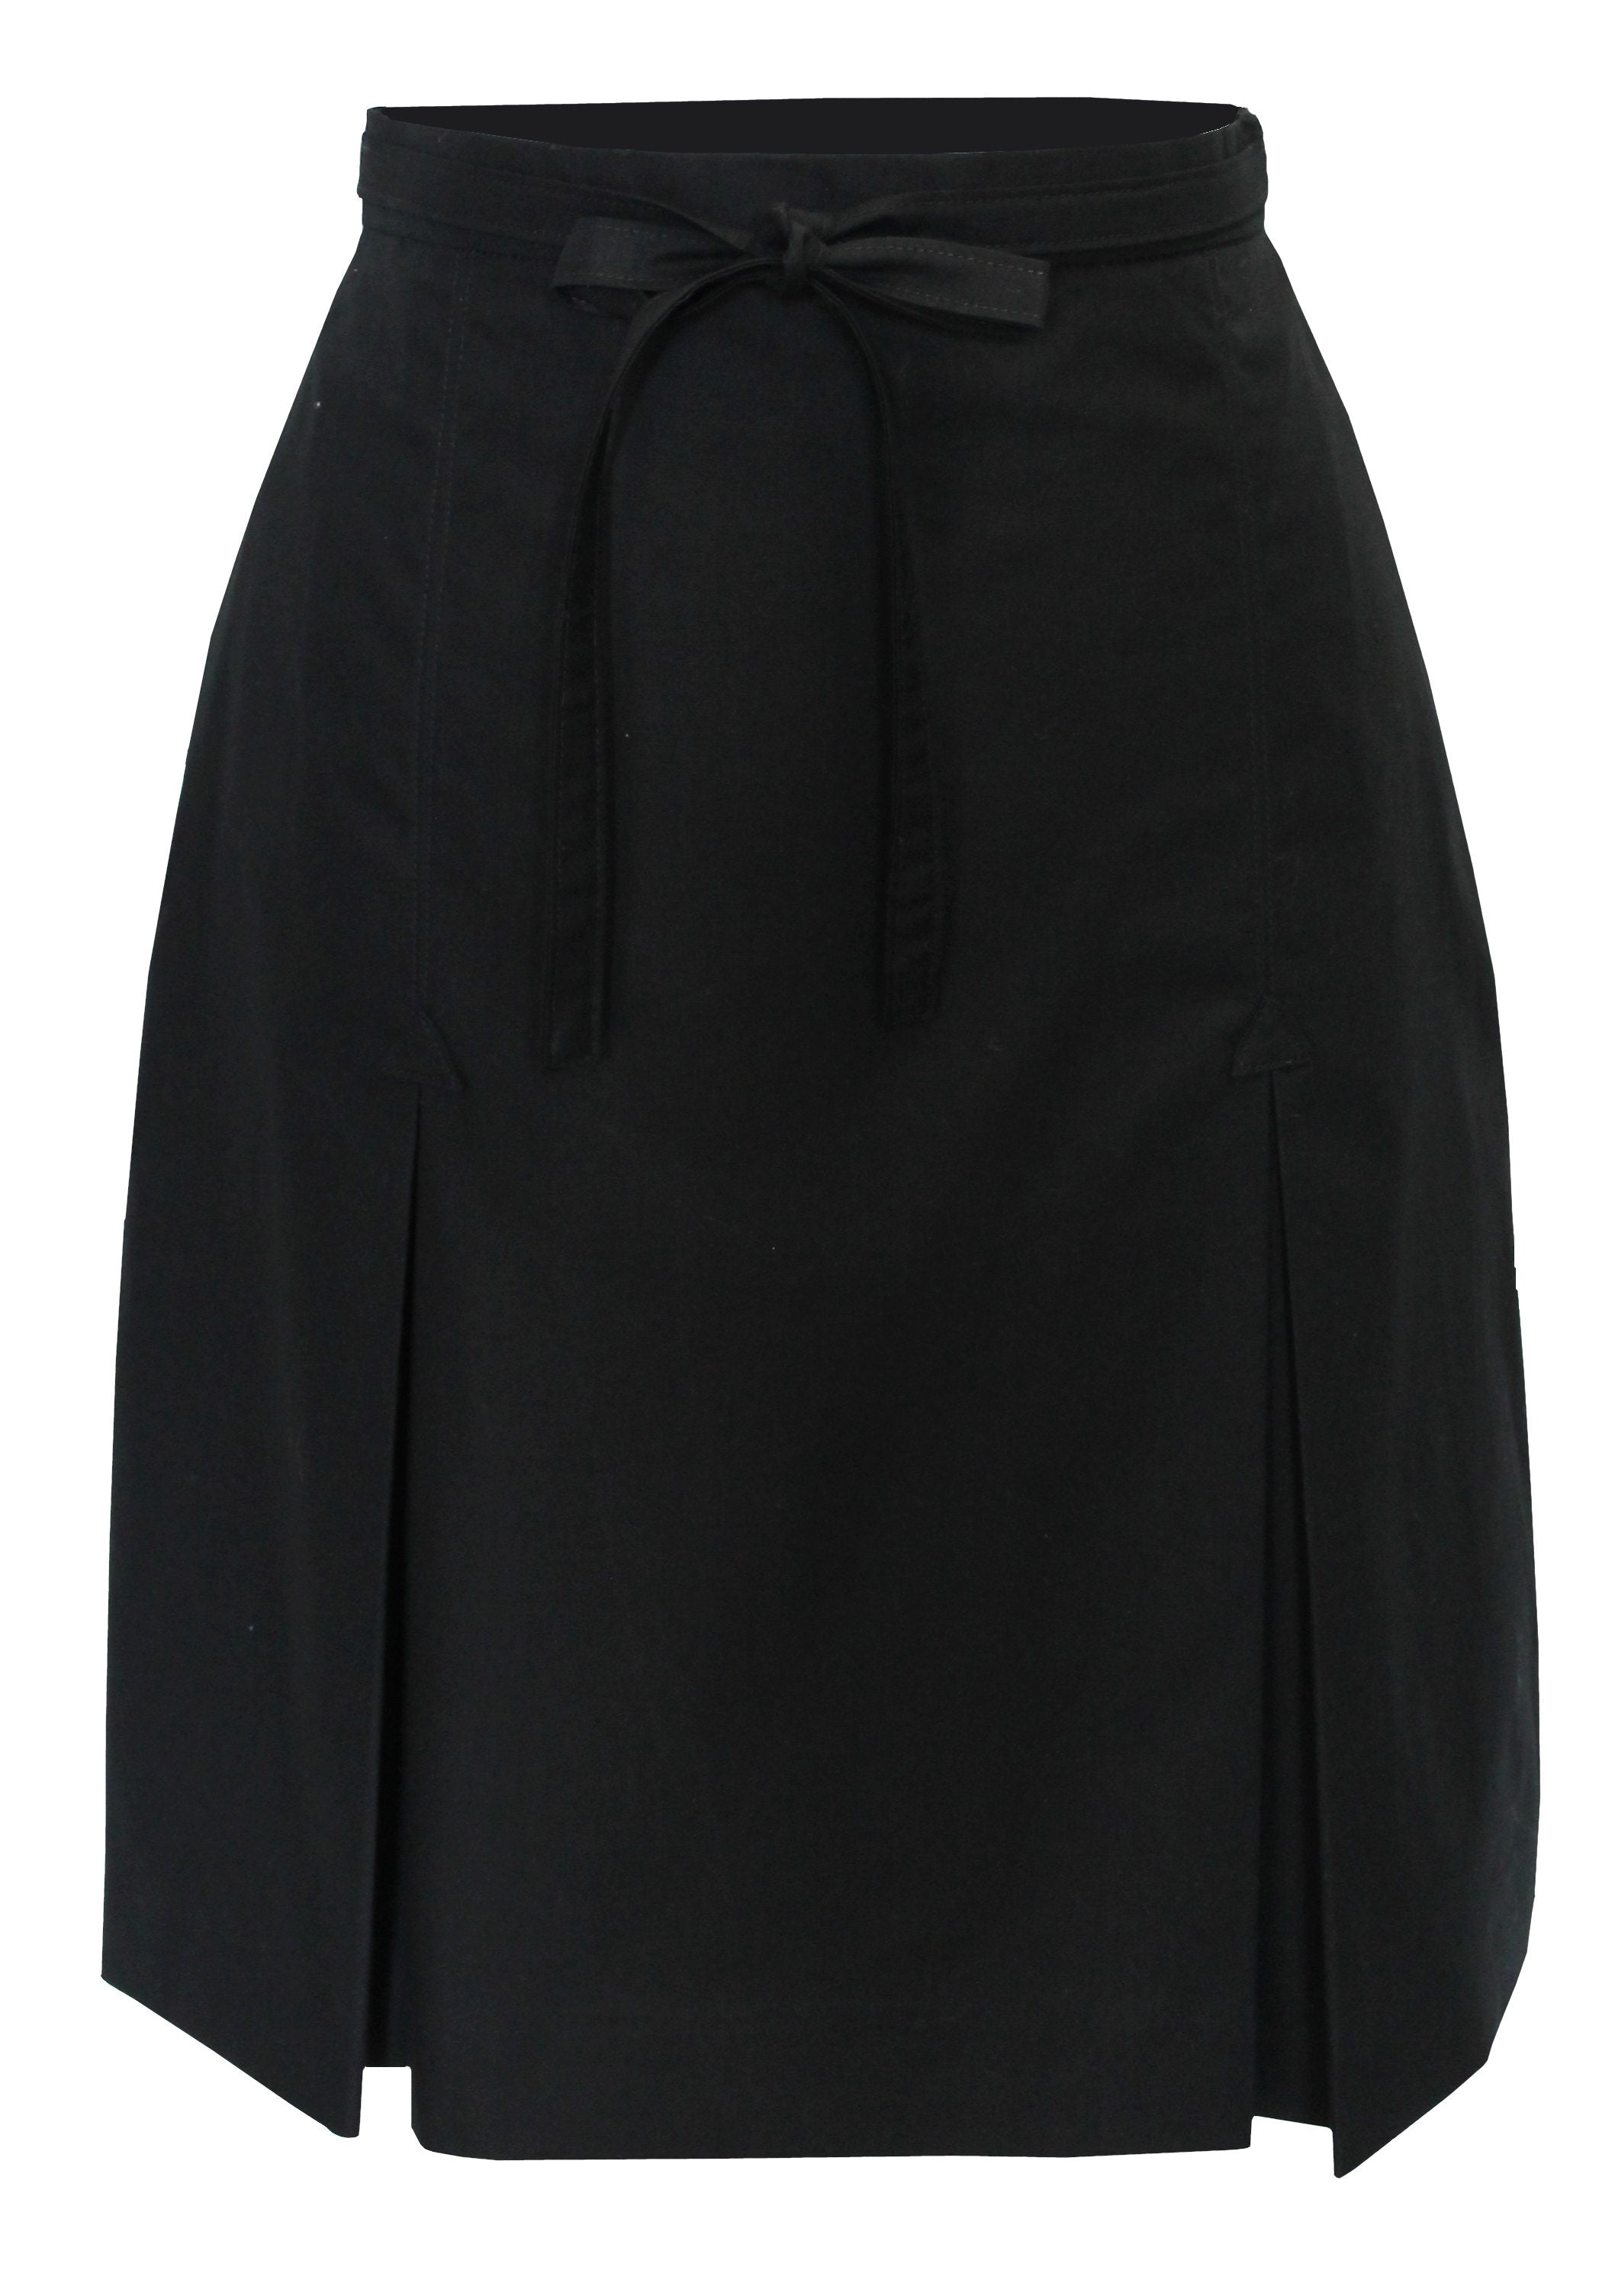 Damen Taillienrock Rock Baumwolle schwarz mit Gürtel Trend mein herzblut